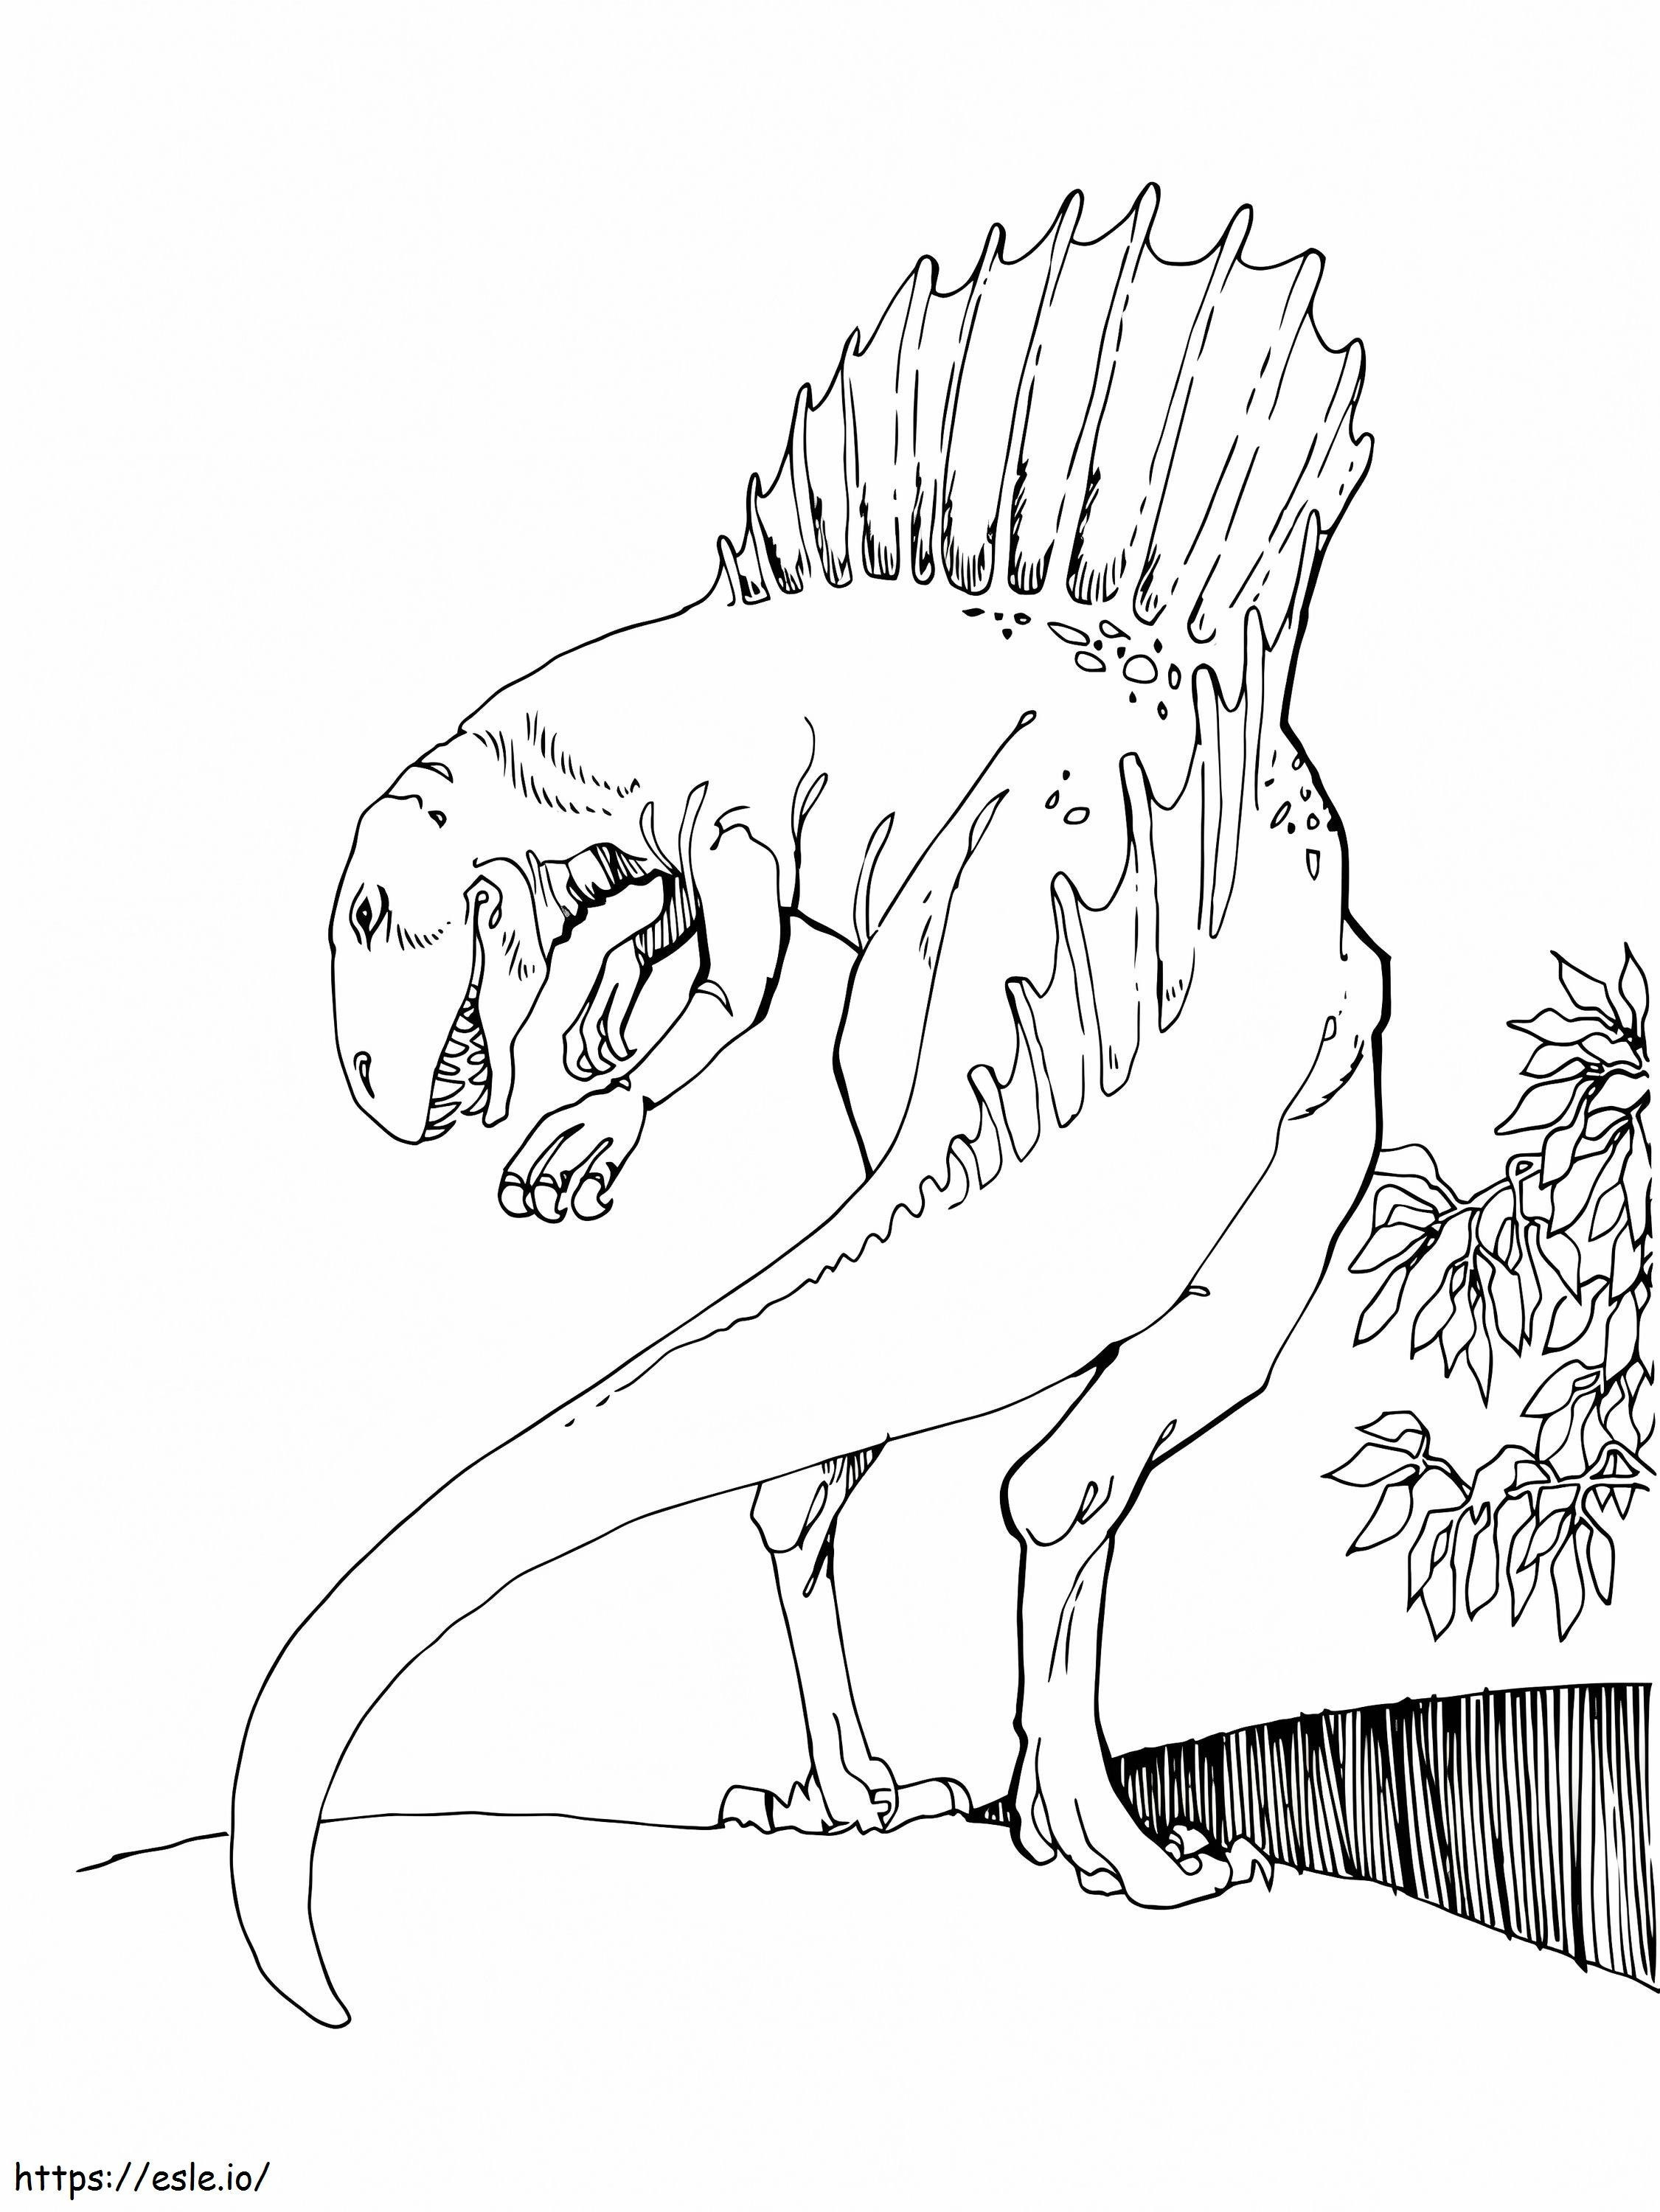 Espinossauro grátis para colorir